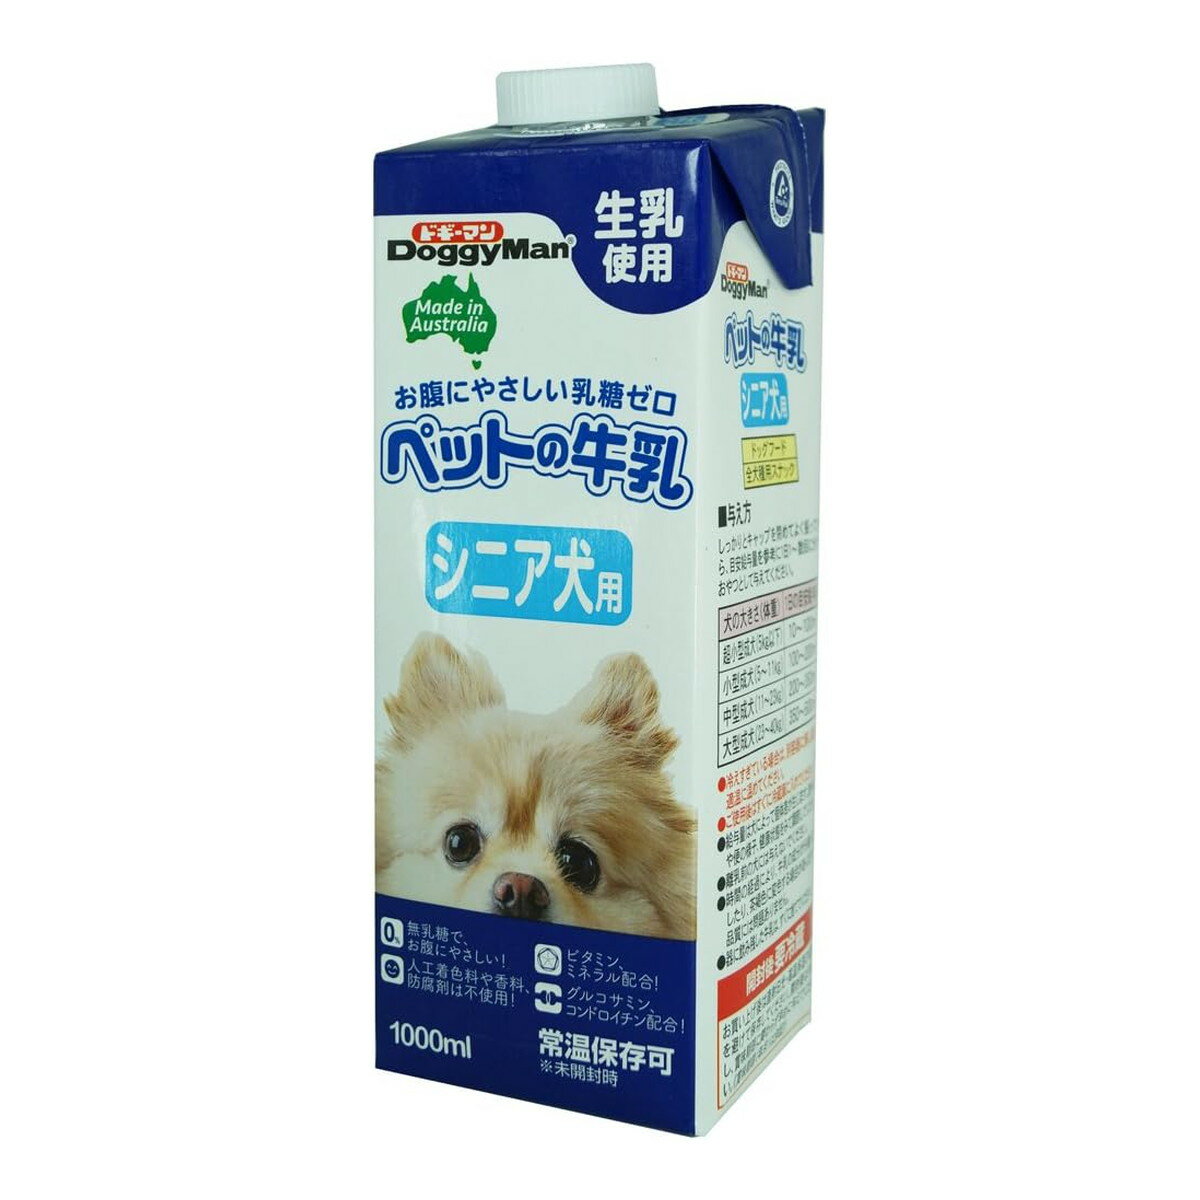 商品名：ドギーマン ペットの牛乳 シニア犬用 1000ml ドッグフード内容量：1000mlJANコード：4974926010374発売元、製造元、輸入元又は販売元：ドギーマン原産国：オーストラリア商品番号：101-4974926010374商品説明オーストラリア産の生乳から作った、風味が生きているシニア犬用の牛乳です。おなかにやさしい乳糖ゼロ。製造過程で乳糖を完全分解しました。人口着色料や香料、防腐剤を使用せず、生乳の旨さを最大限引き出しています。グルコサミン、コンドロイチン、ビタミン、ミネラル、カルシウム、タウリン配合。シニア犬の健全な生活をサポートします。グルコサミン、コンドロイチンを配合した関節にもやさしいおいしい牛乳です。広告文責：アットライフ株式会社TEL 050-3196-1510 ※商品パッケージは変更の場合あり。メーカー欠品または完売の際、キャンセルをお願いすることがあります。ご了承ください。